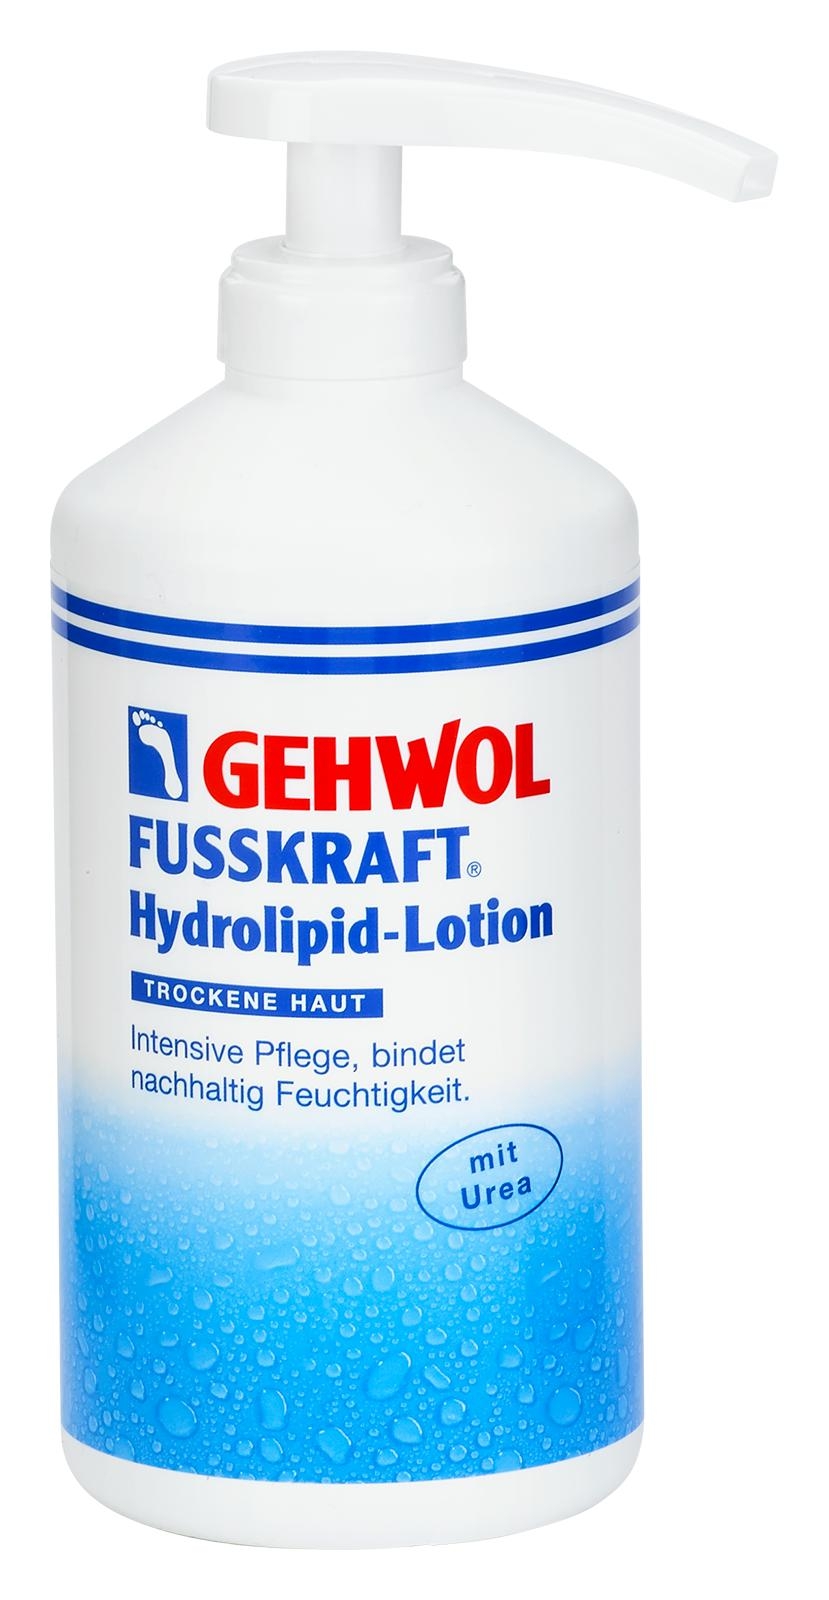 GEHWOL FUSSKRAFT Hydrolipid-Lotion 500 ml